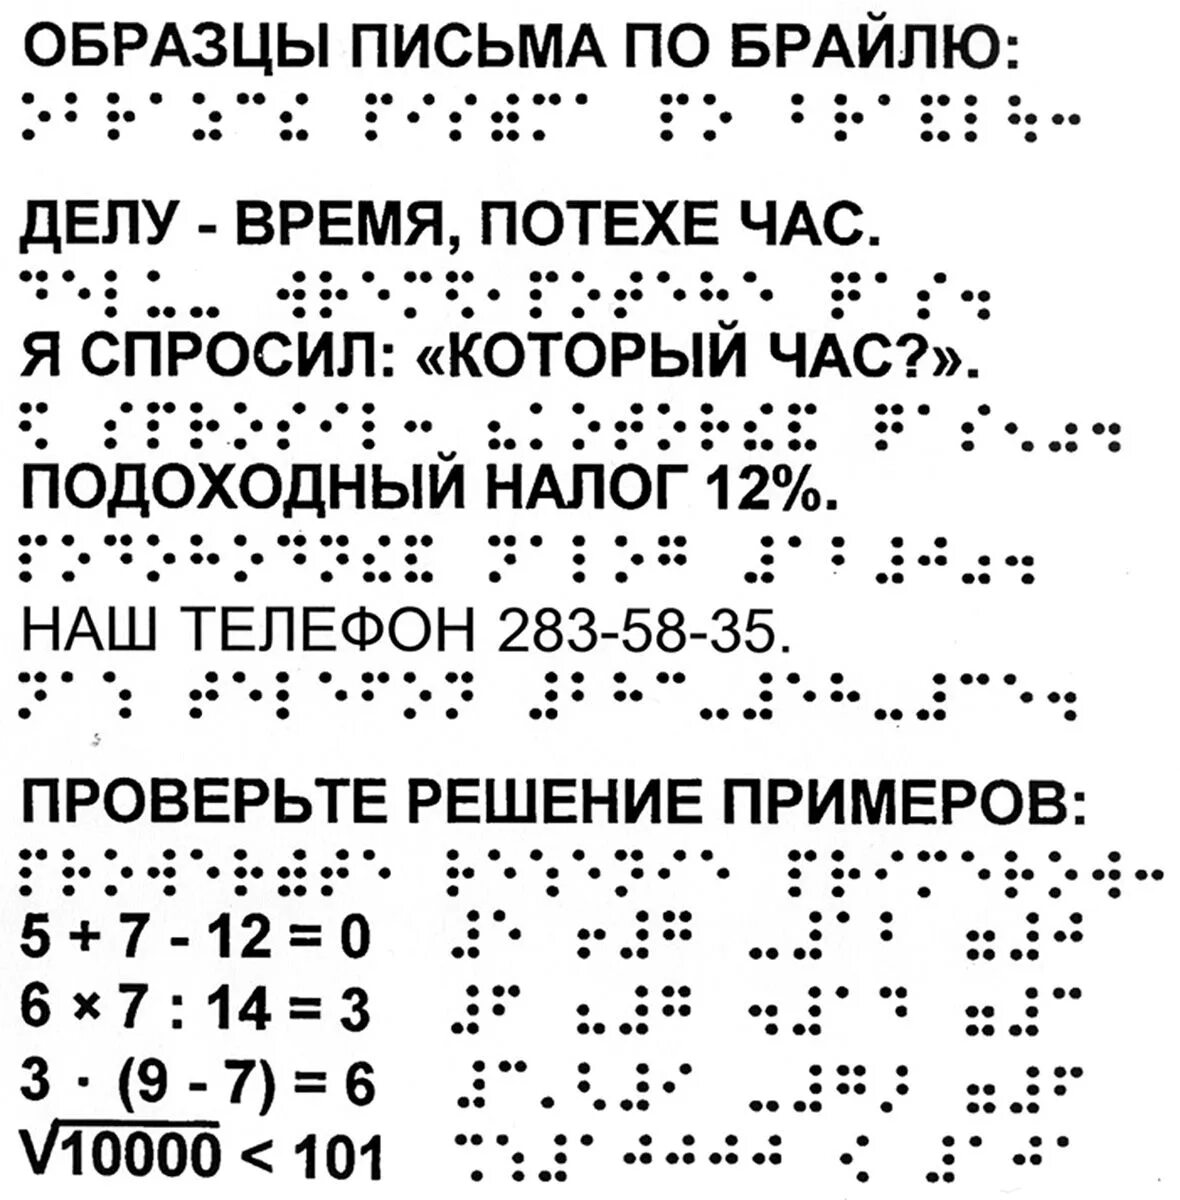 Язык для телефона шрифт. Азбука по системе Брайля. Рельефно-точечный шрифт Брайля. Алфавит Брайля на русском для слепых. Азбука для слепых шрифт Брайля.